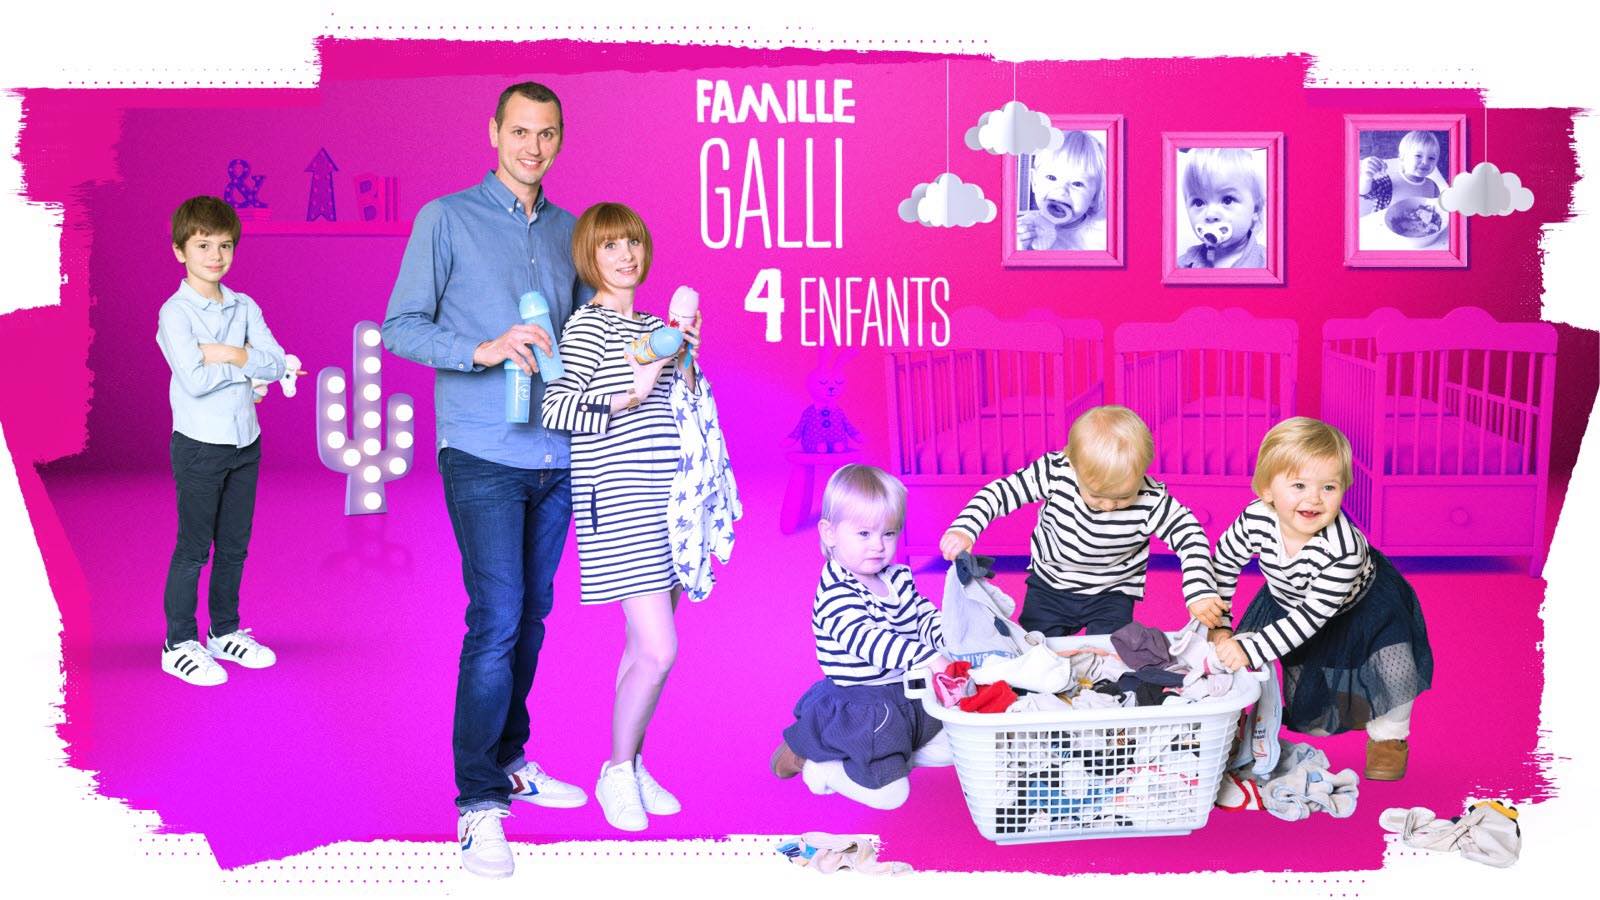 Familles nombreuses - la vie en XXL - TF1 - Famille Galli